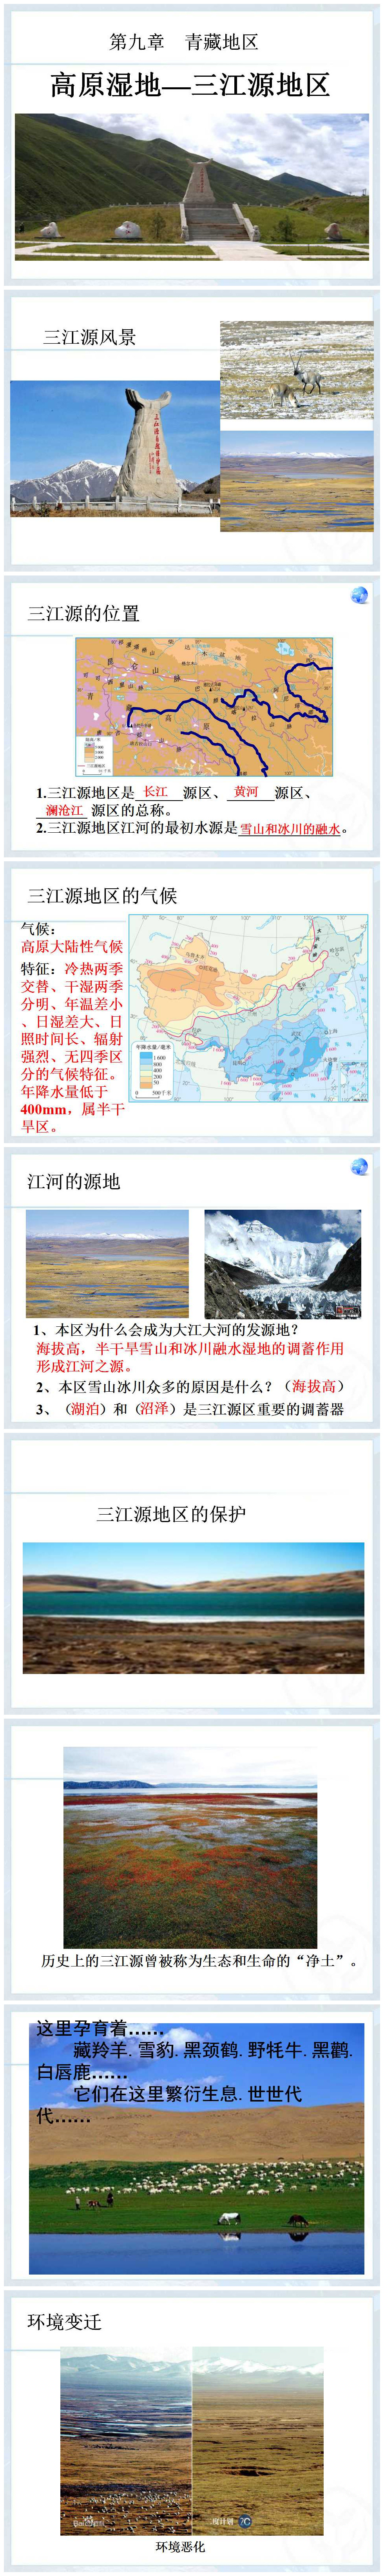 《高原湿地三江源地区》青藏地区PPT课件3